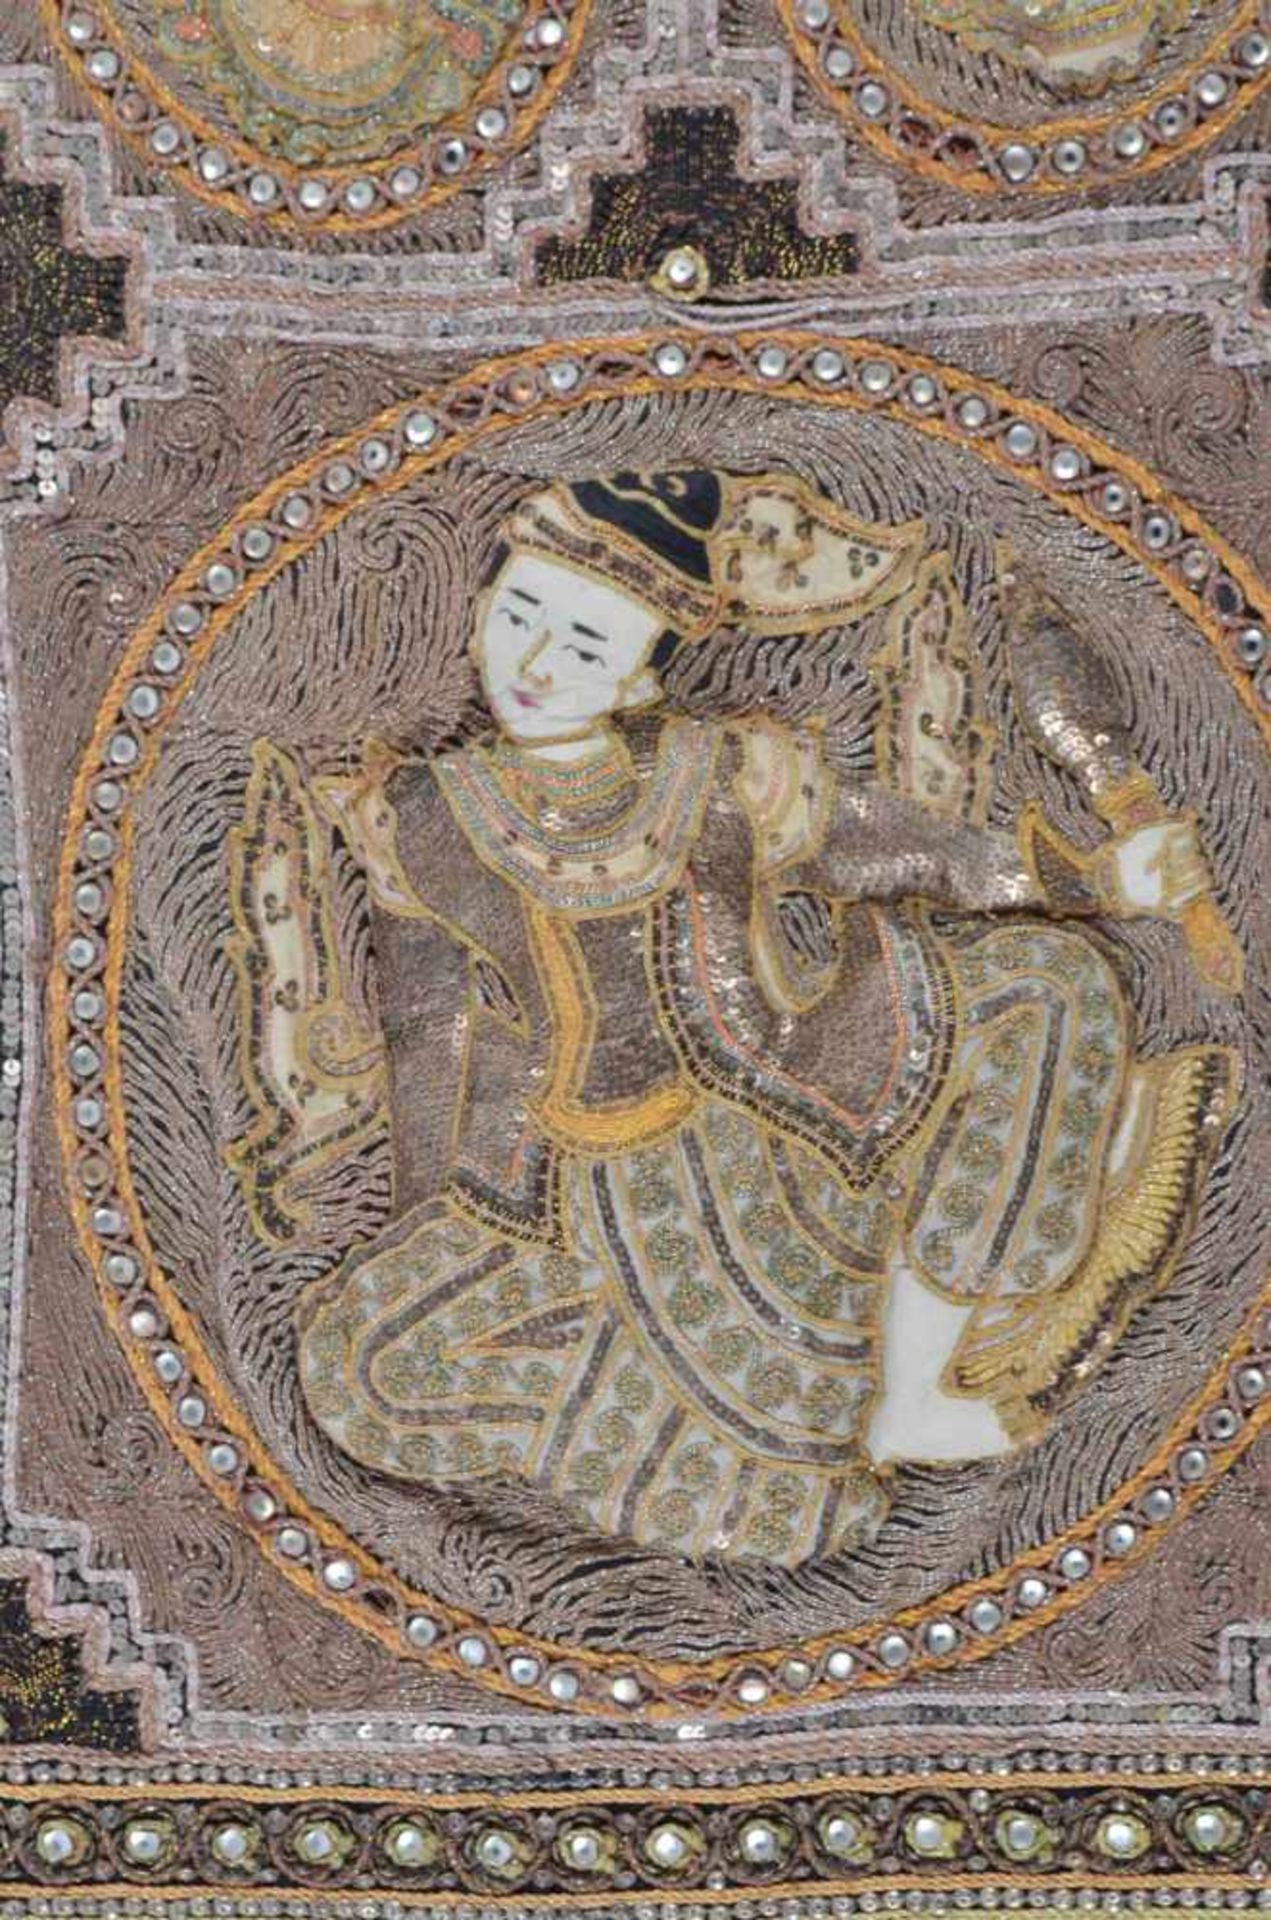 Asiatischer Wandteppich 19. Jhd.Handarbeit, mit Pailletten und Steinen besetzt, 74 cm x 57 cmAsian - Bild 2 aus 5